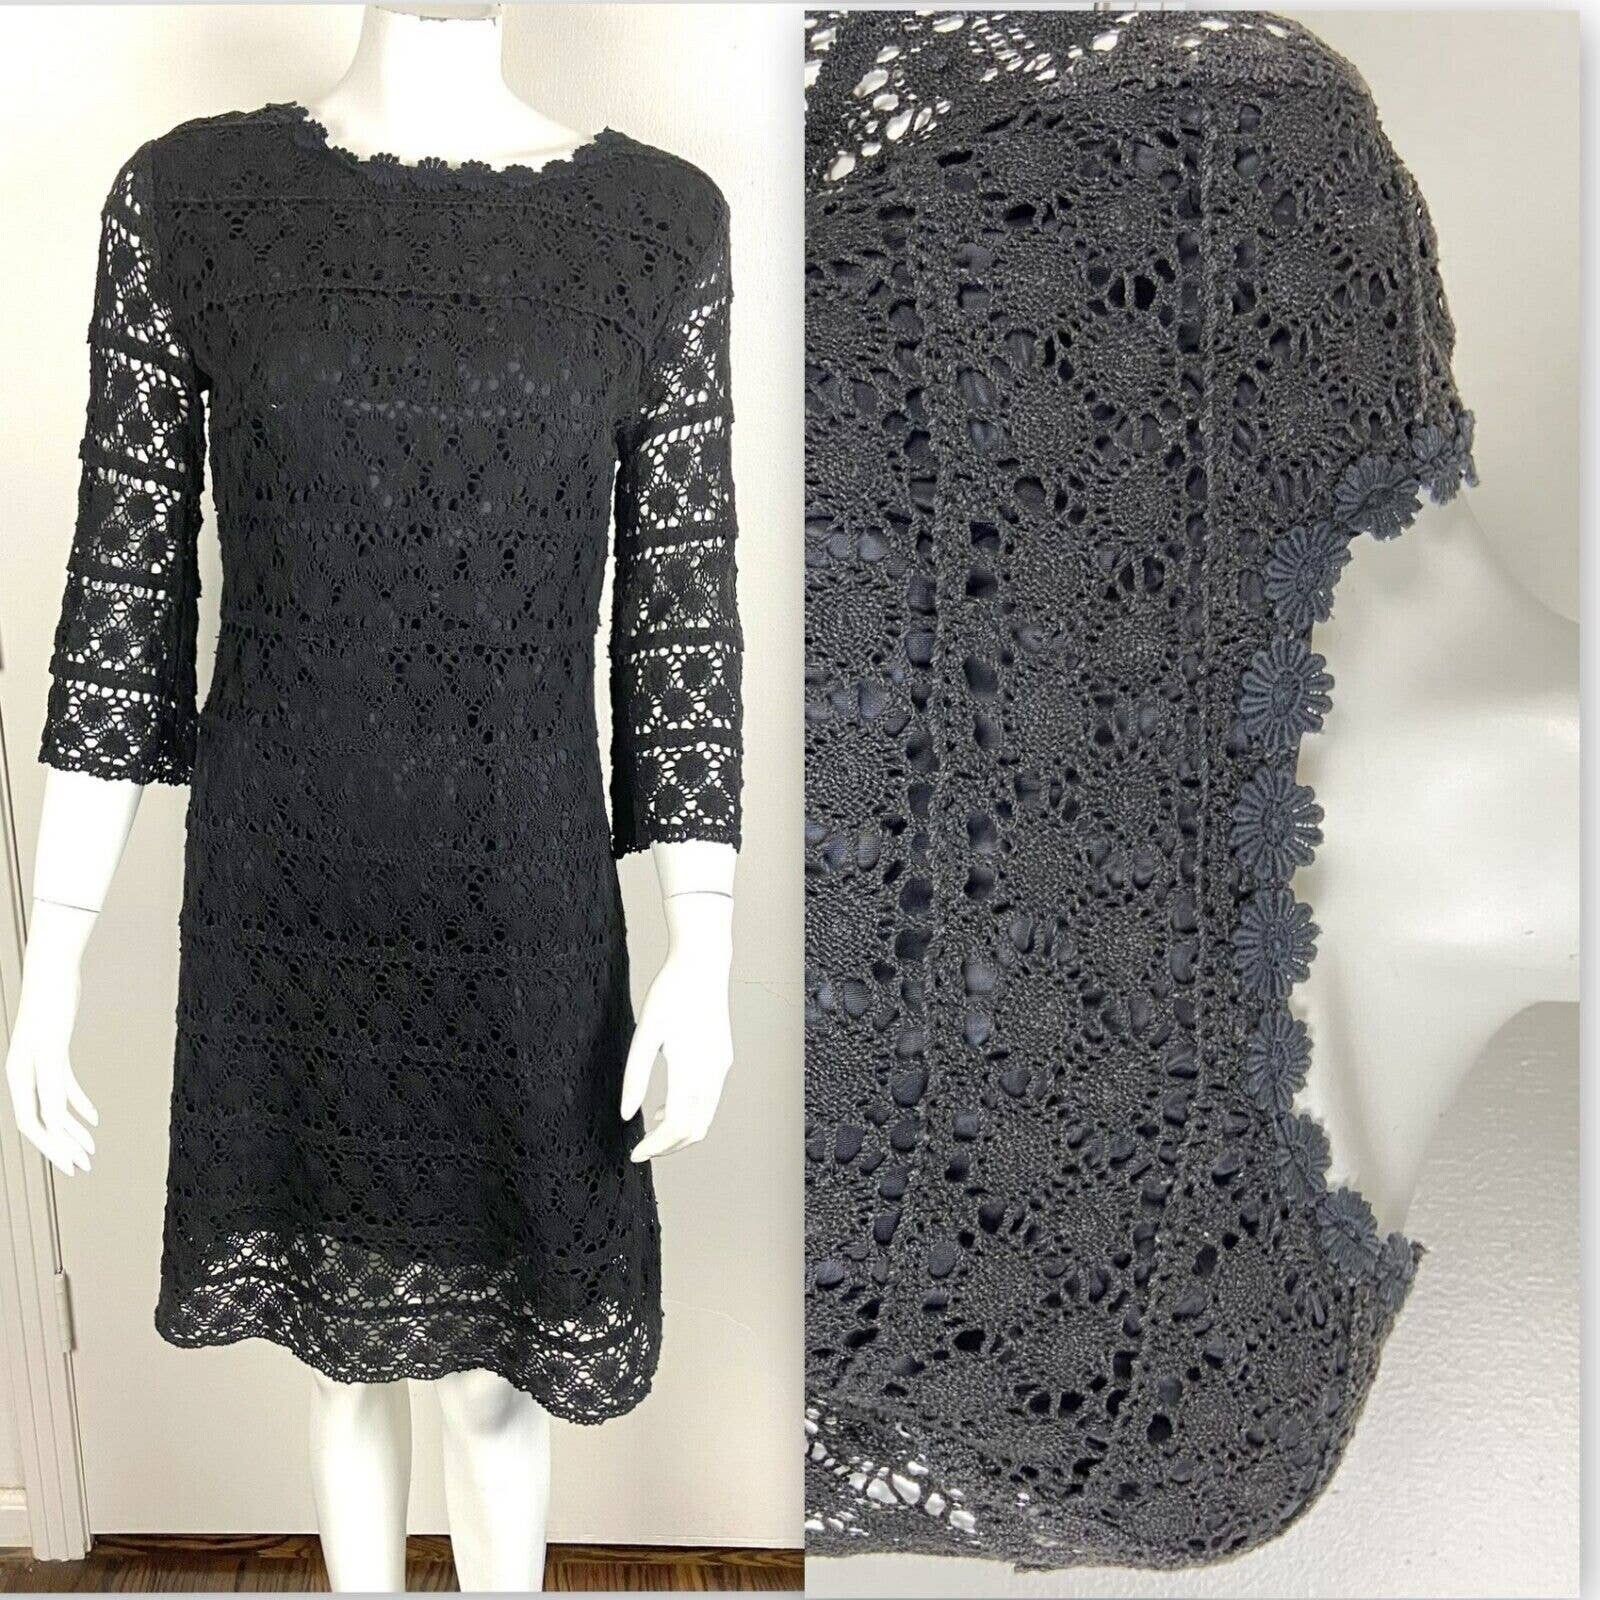 Handmade Vintage 60s 70s Black Crochet Lace Mini Shift Dress Size S / US 4 / IT 40 - 1 Preview